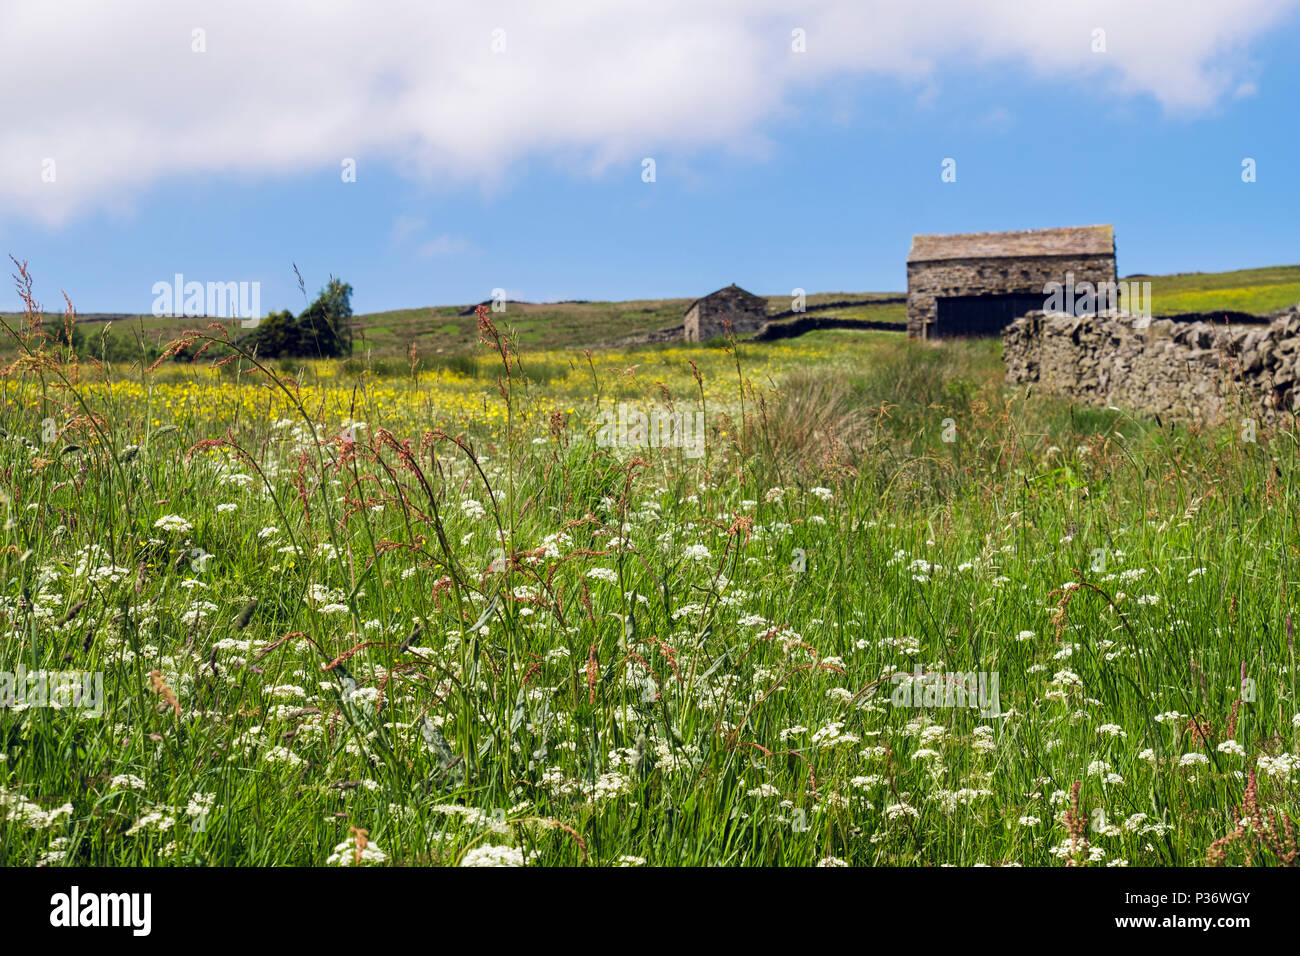 Pays d'été avec scène hay meadow de fleurs sauvages et d'anciennes granges en campagne. La région de Swaledale Yorkshire Dales National Park North Yorkshire Angleterre UK Banque D'Images